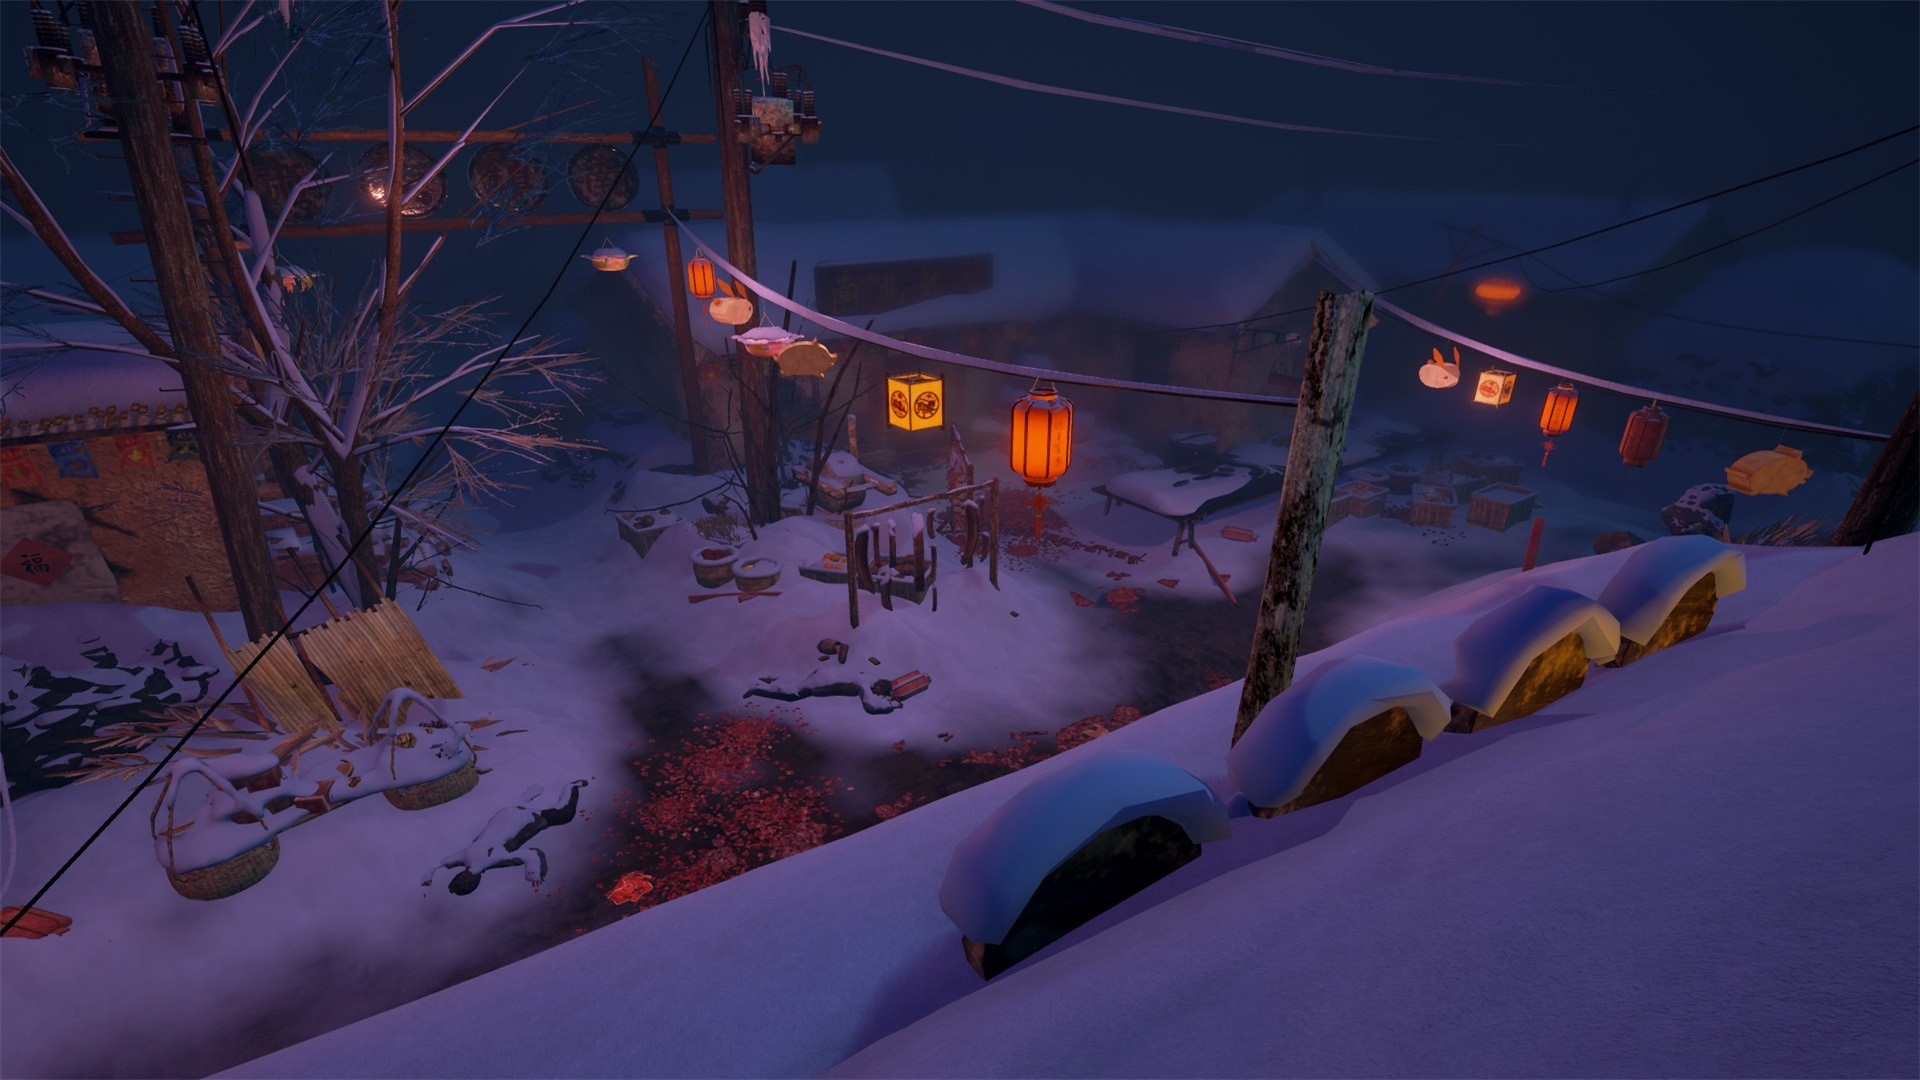 灵魂筹码 - 冰雪寒村 Soul at Stake - Frozen Village screenshot